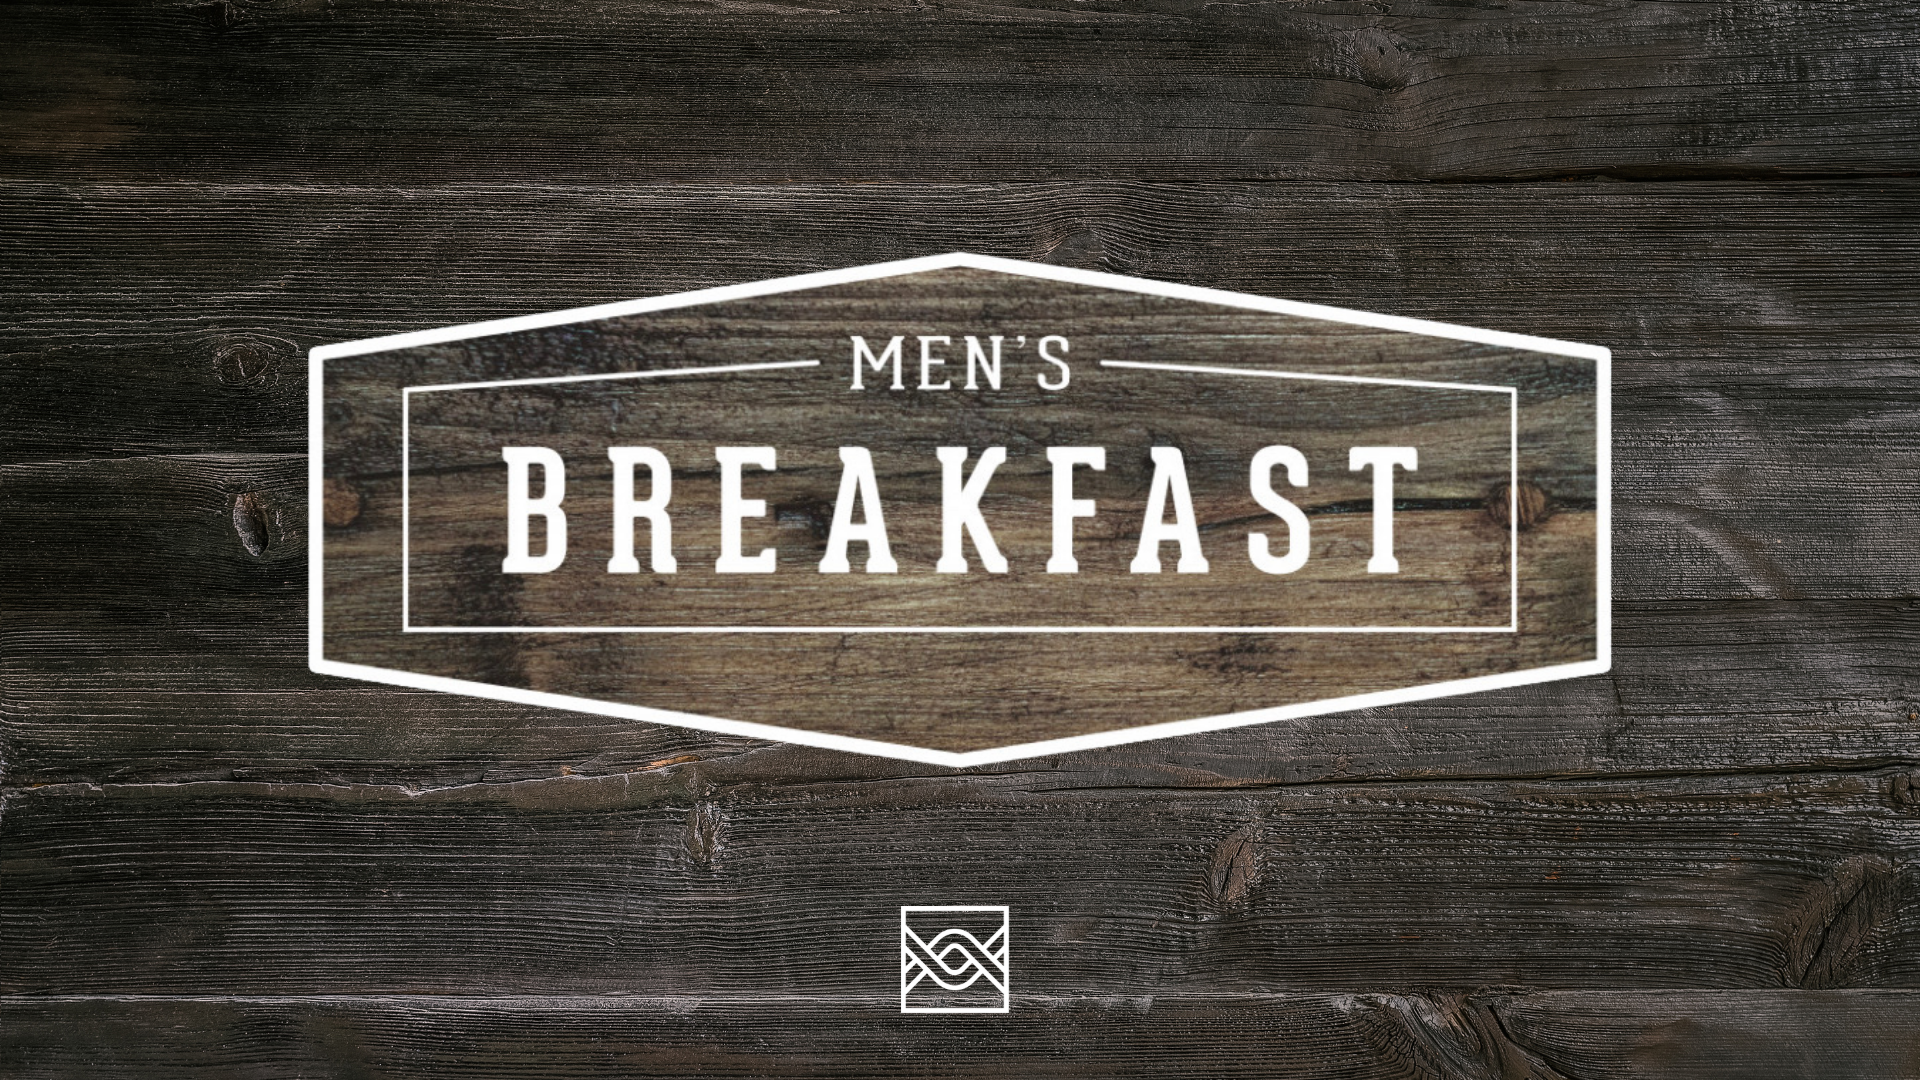 Men's Breakfast 1920x1080 image